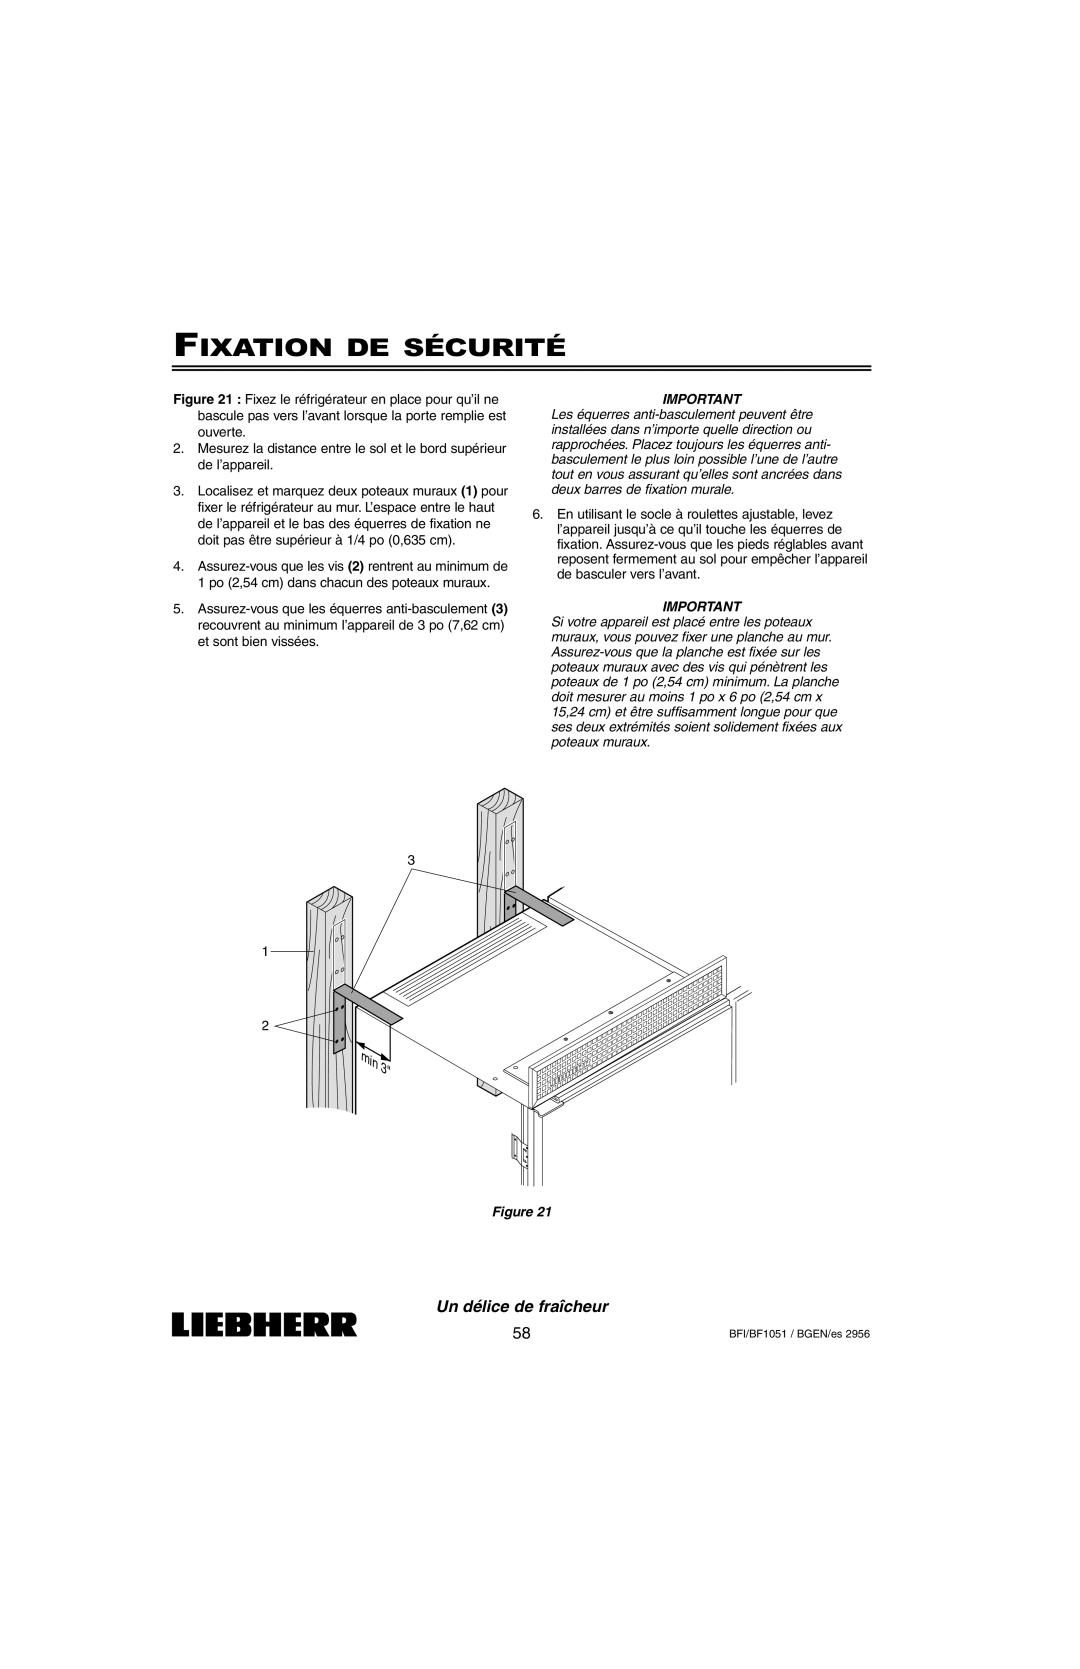 Liebherr BFI1051, BF1051 installation instructions Fixation De Sécurité, Un délice de fraîcheur, Figure 